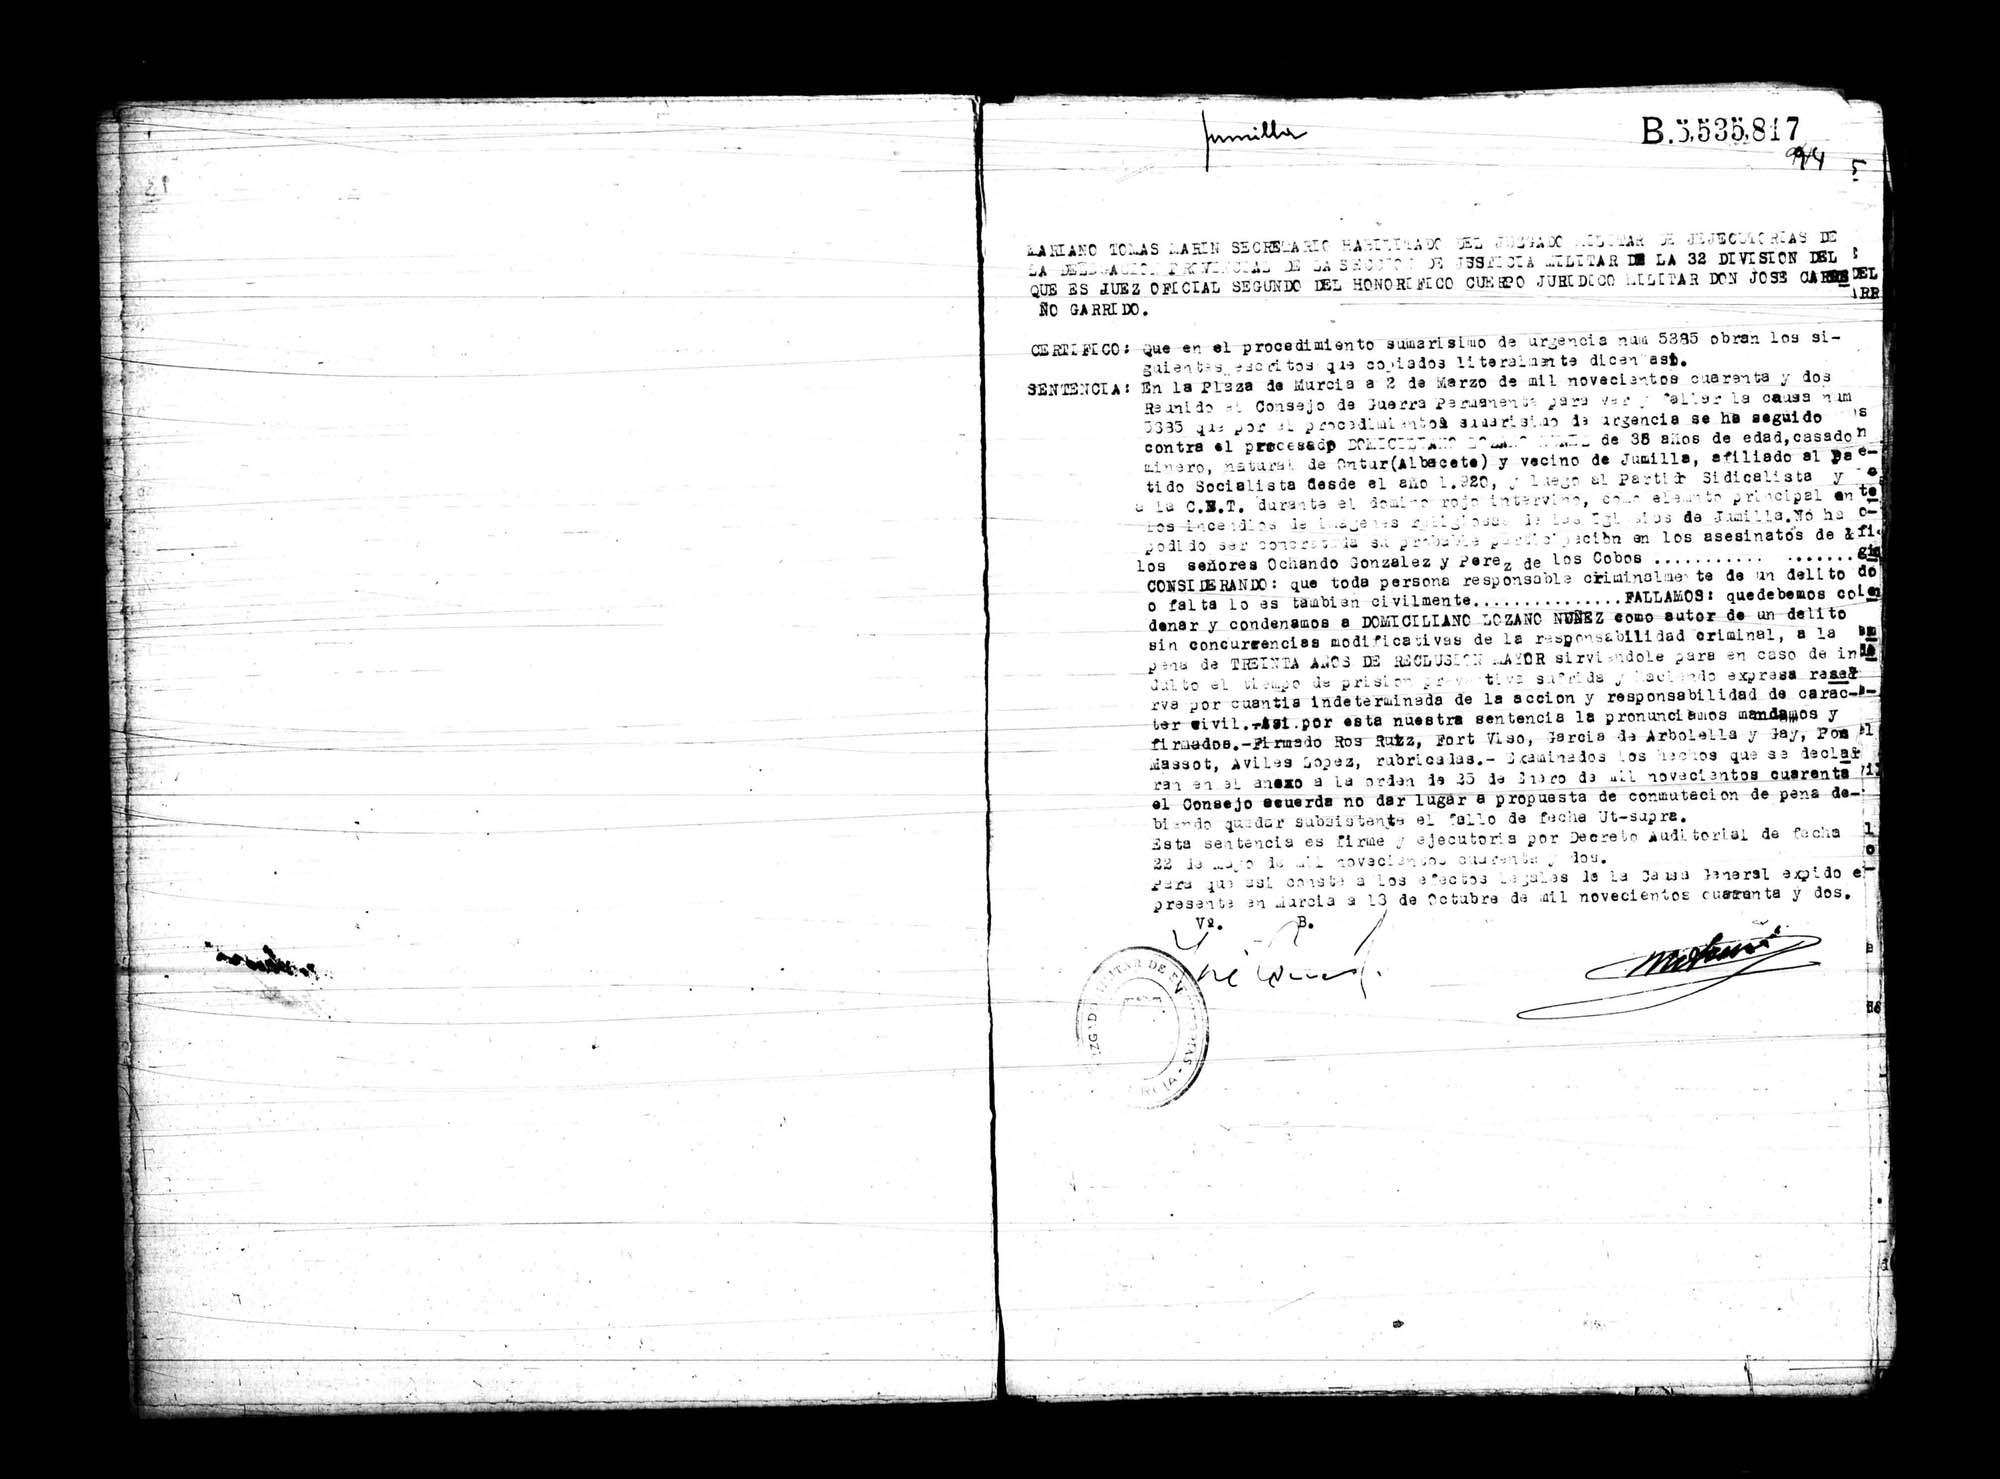 Certificado de la sentencia pronunciada contra Domiciliano Lozano Núñez, causa 5385, el 2 de marzo de 1942 en Murcia.